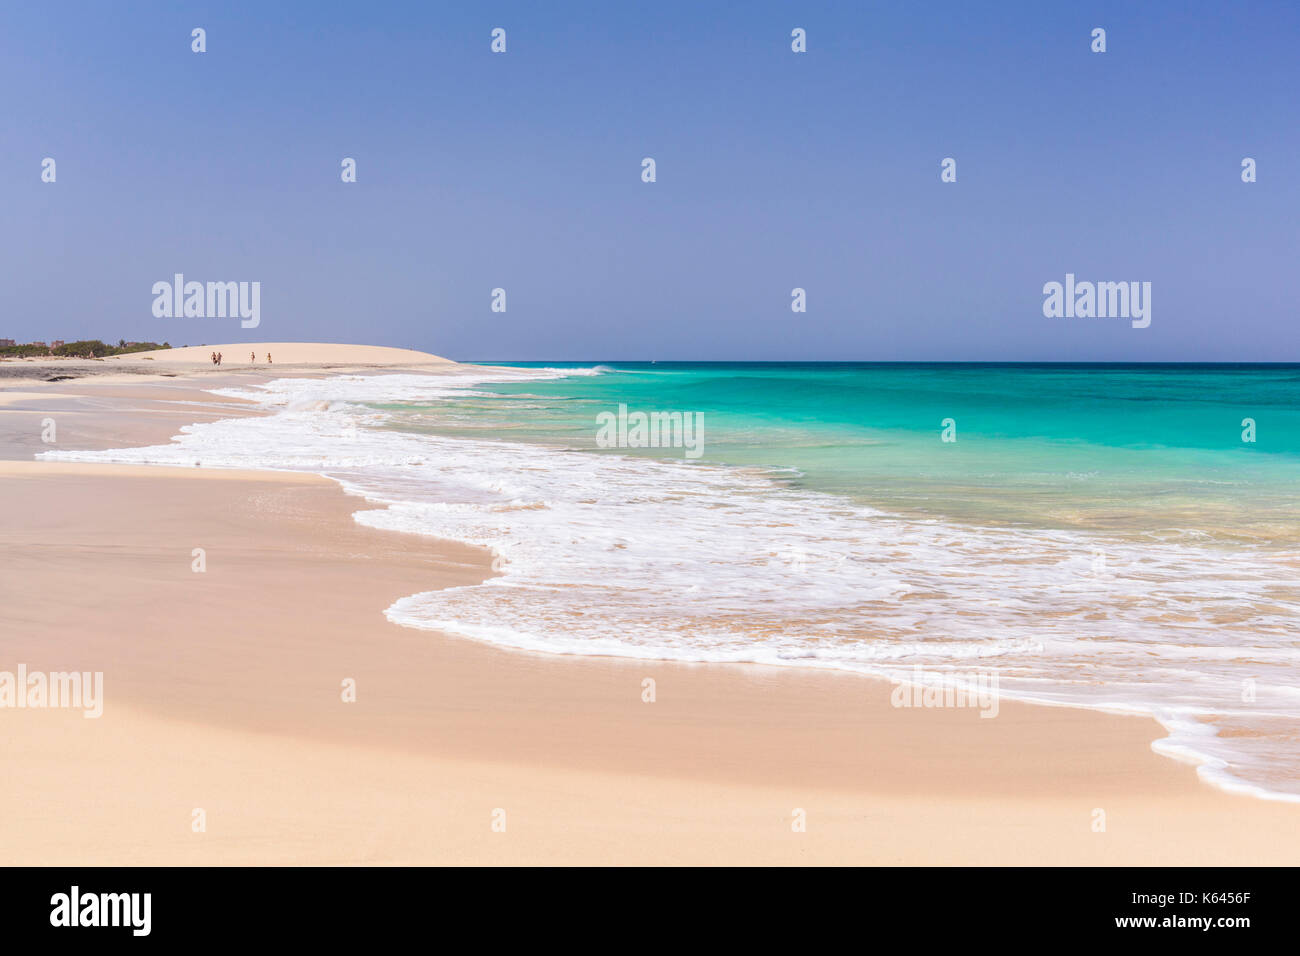 Kap Verde SAL leeren Strand-Szene - die Leere des weißen Sand und blaues Meer am Strand in der Nähe von Ponta Preta santa maria Insel Sal Kapverden Afrika Stockfoto